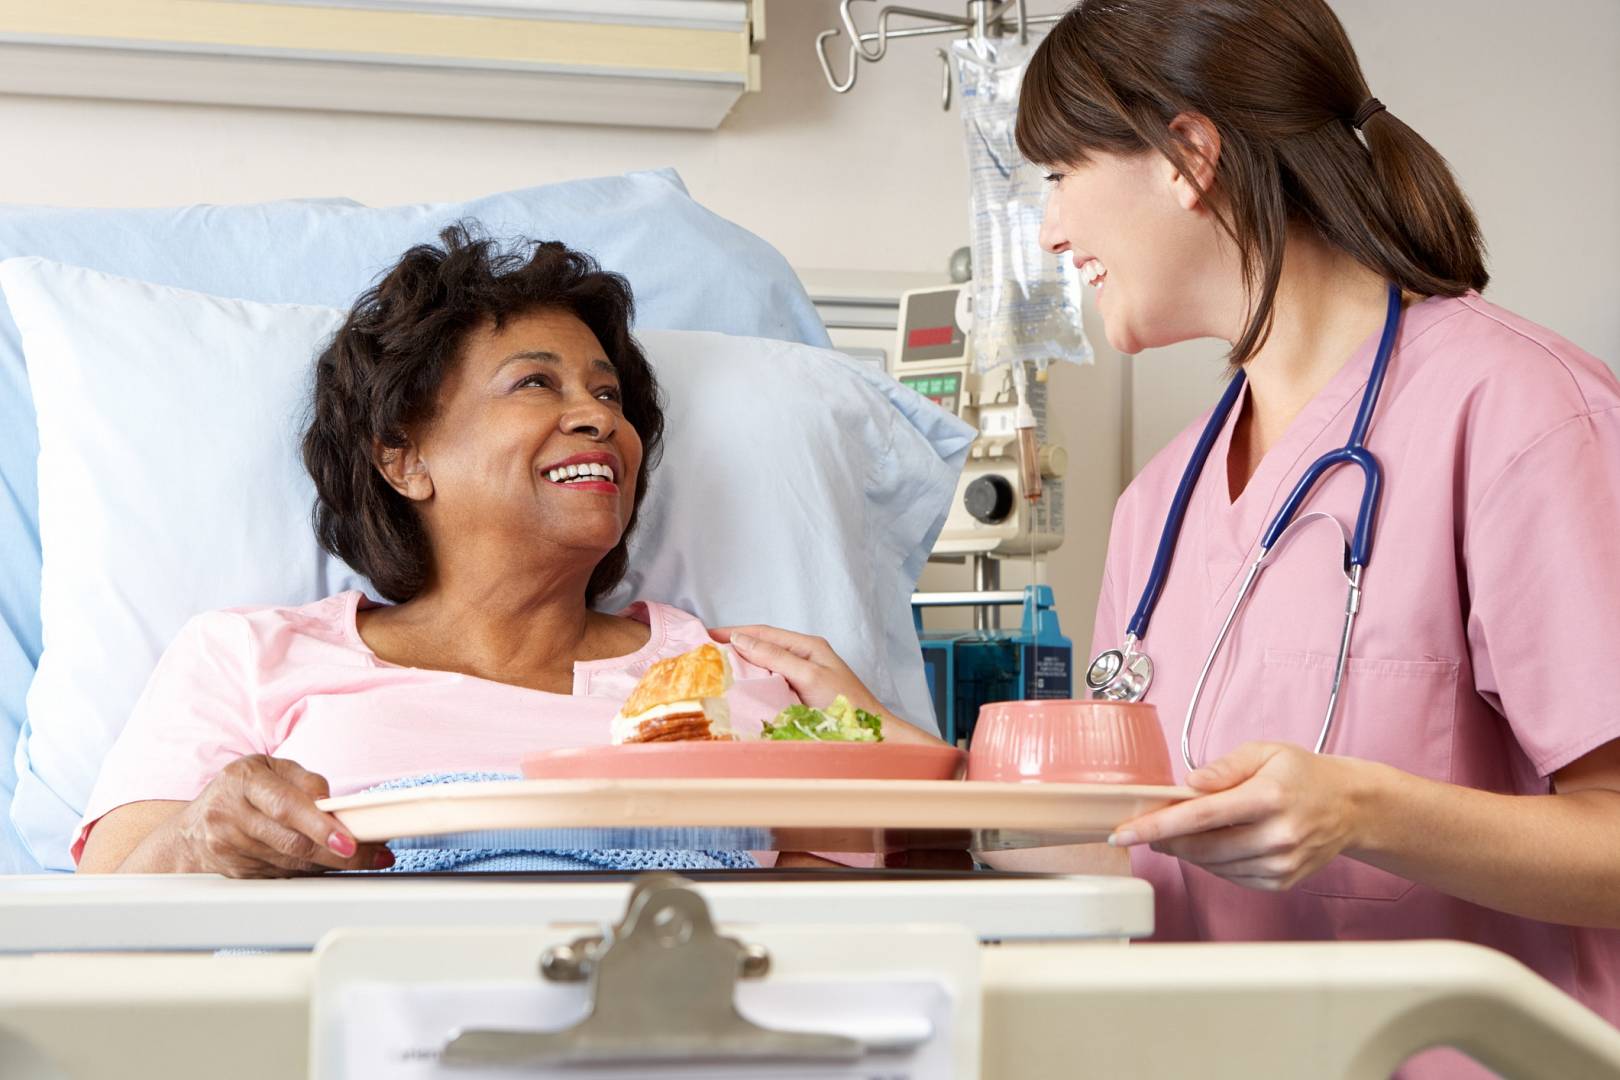 Kobieta która jest w szpitalu dostaje jedzenie od pielęgniarki